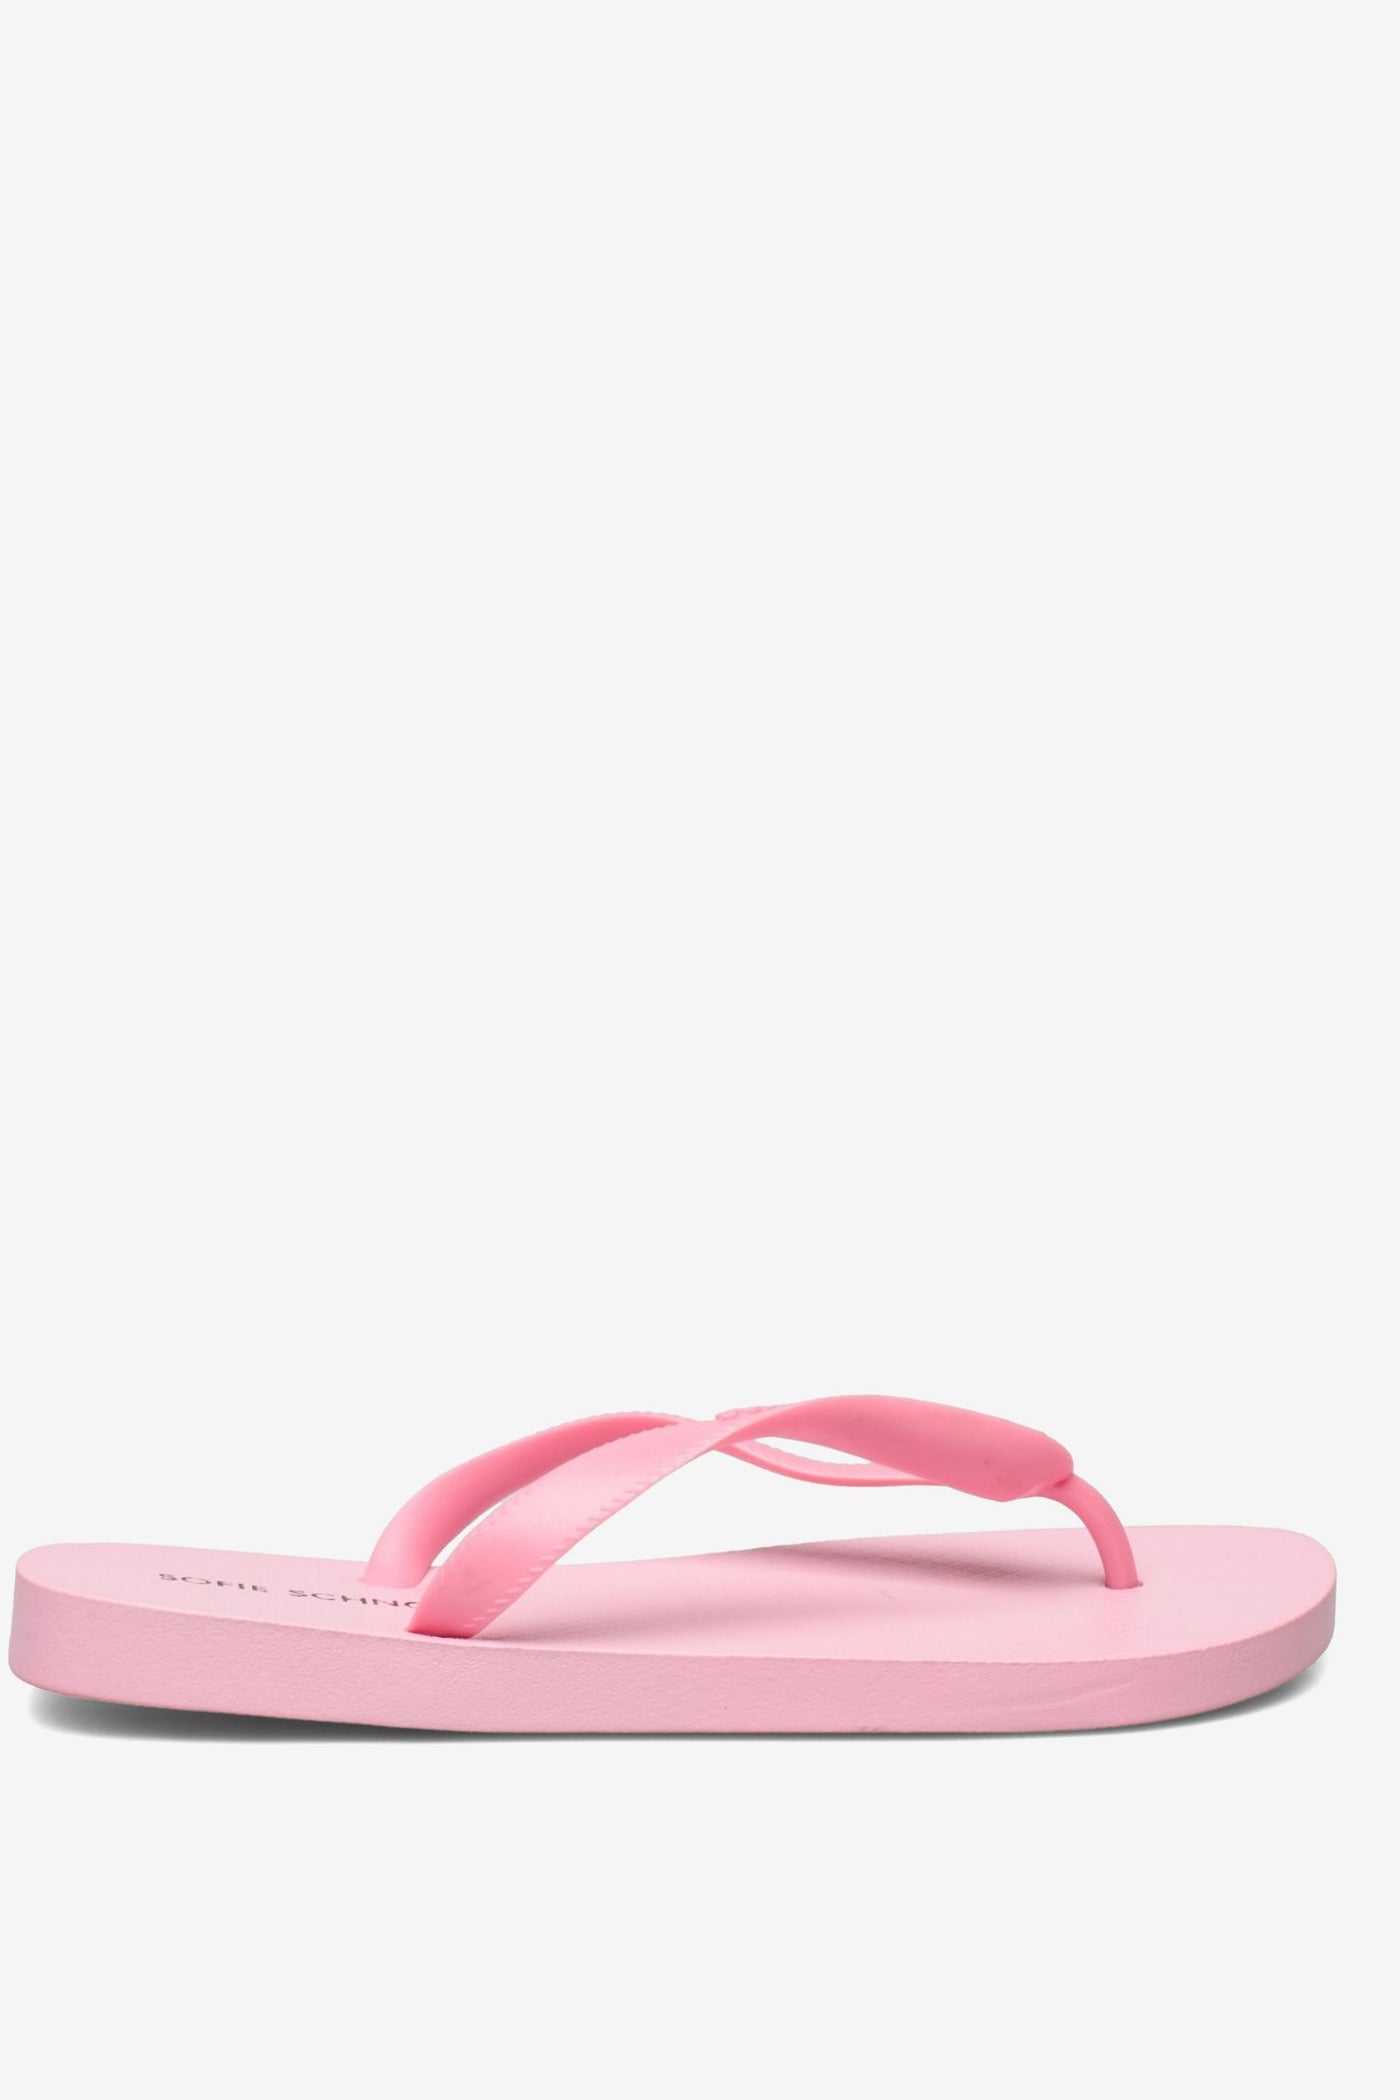 Sofie Schnoor Flip-Flops - Pink | Jezabel Boutique